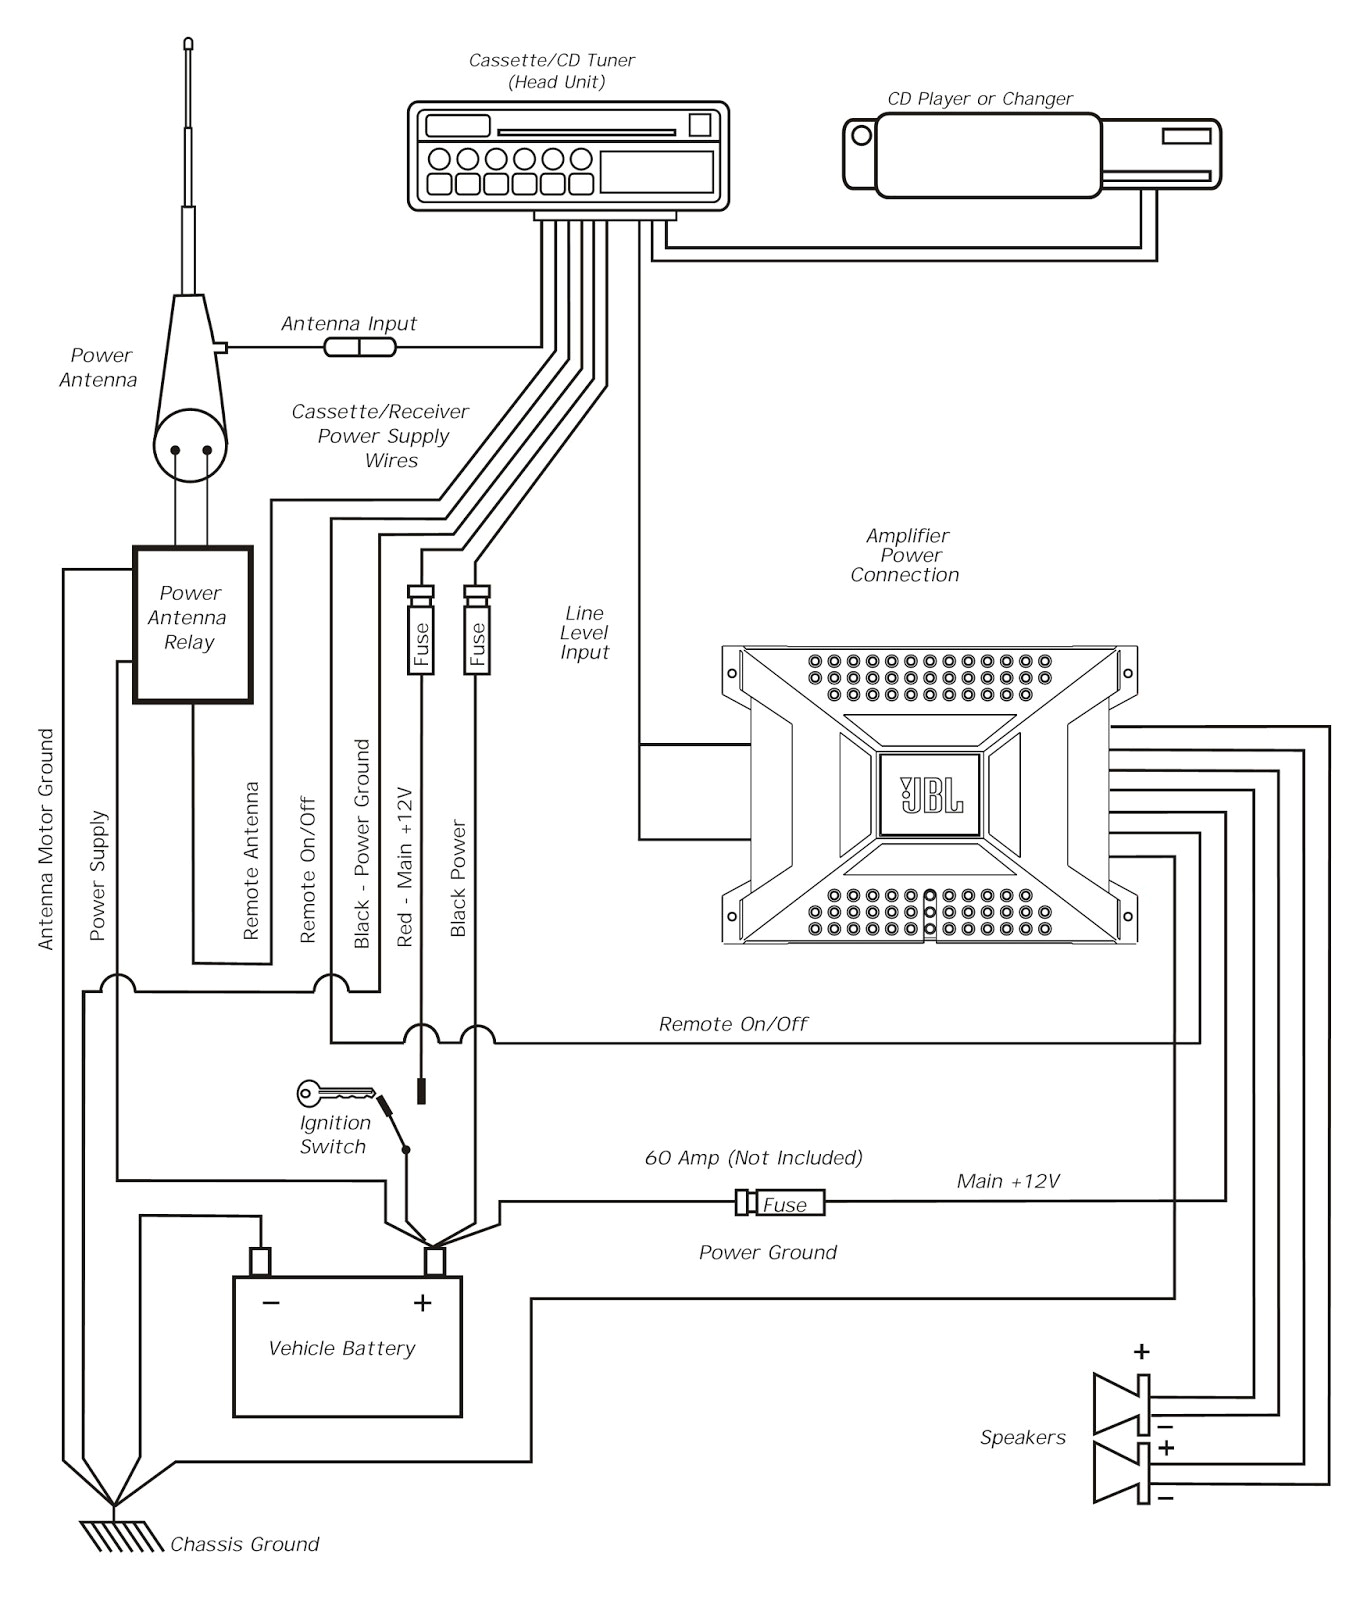 pac mor wiring diagram blog wiring diagram pac mor wiring diagram wiring diagram center pac mor